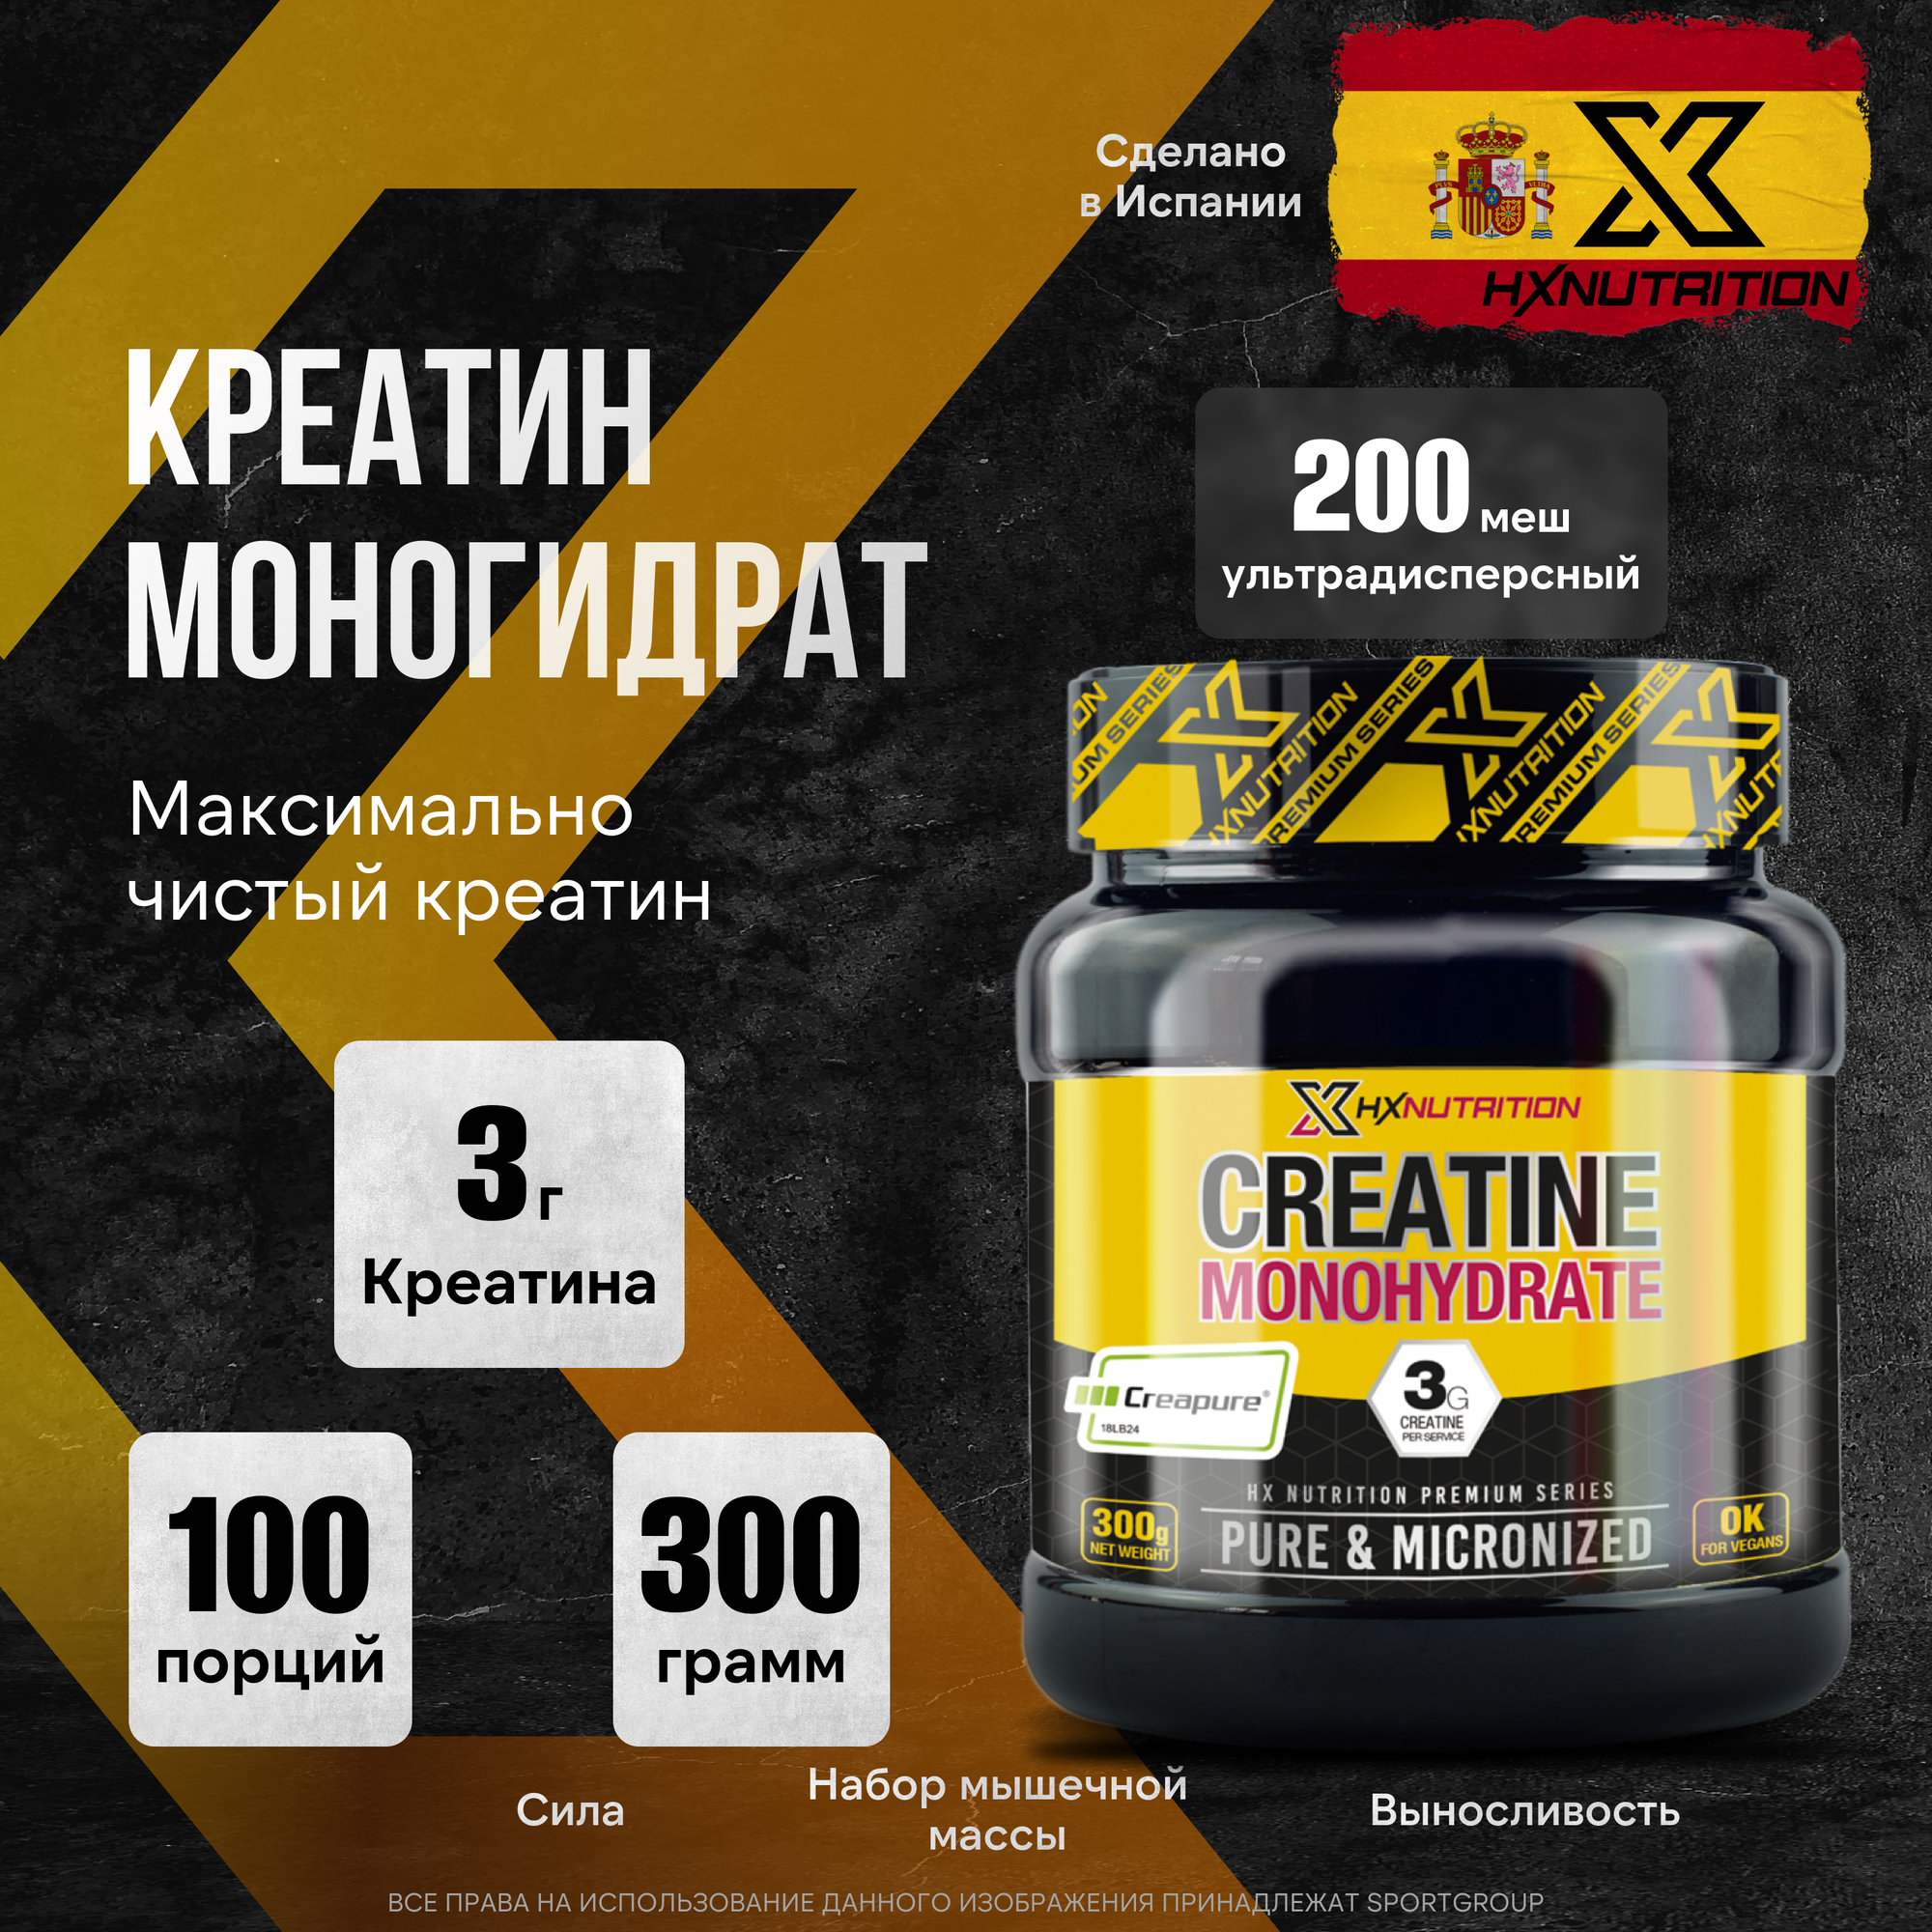 Креатин HX Nutrition Premium Creatine Monohydrate, 300 г.